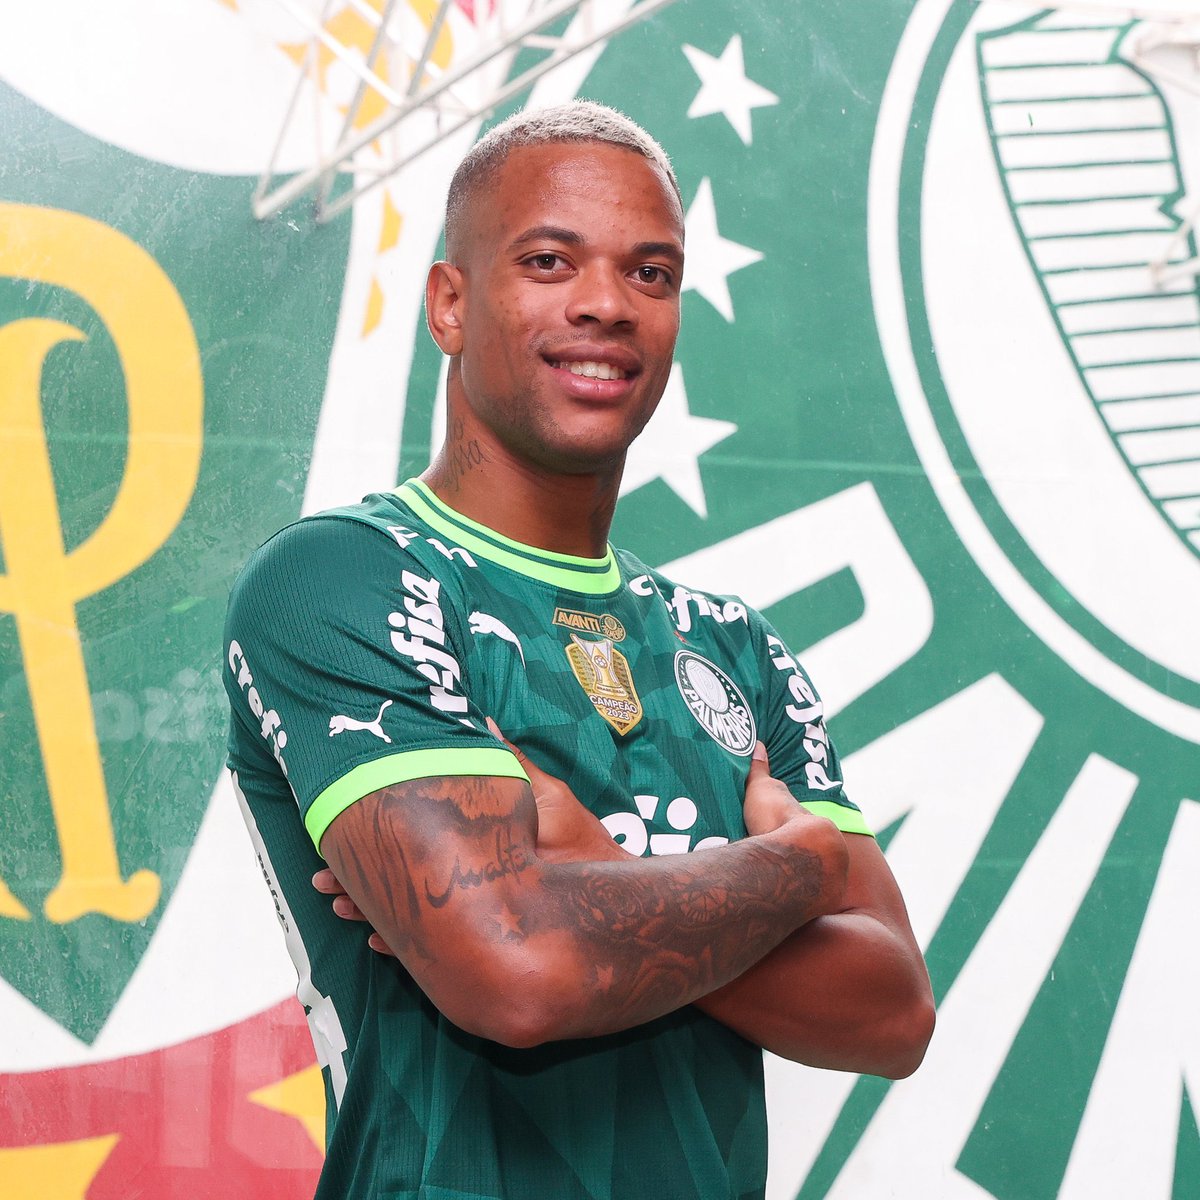 Agora é oficial! Palmeiras anuncia a contratação de Caio Paulista, comprado junto ao Fluminense após boa passagem pelo São Paulo.